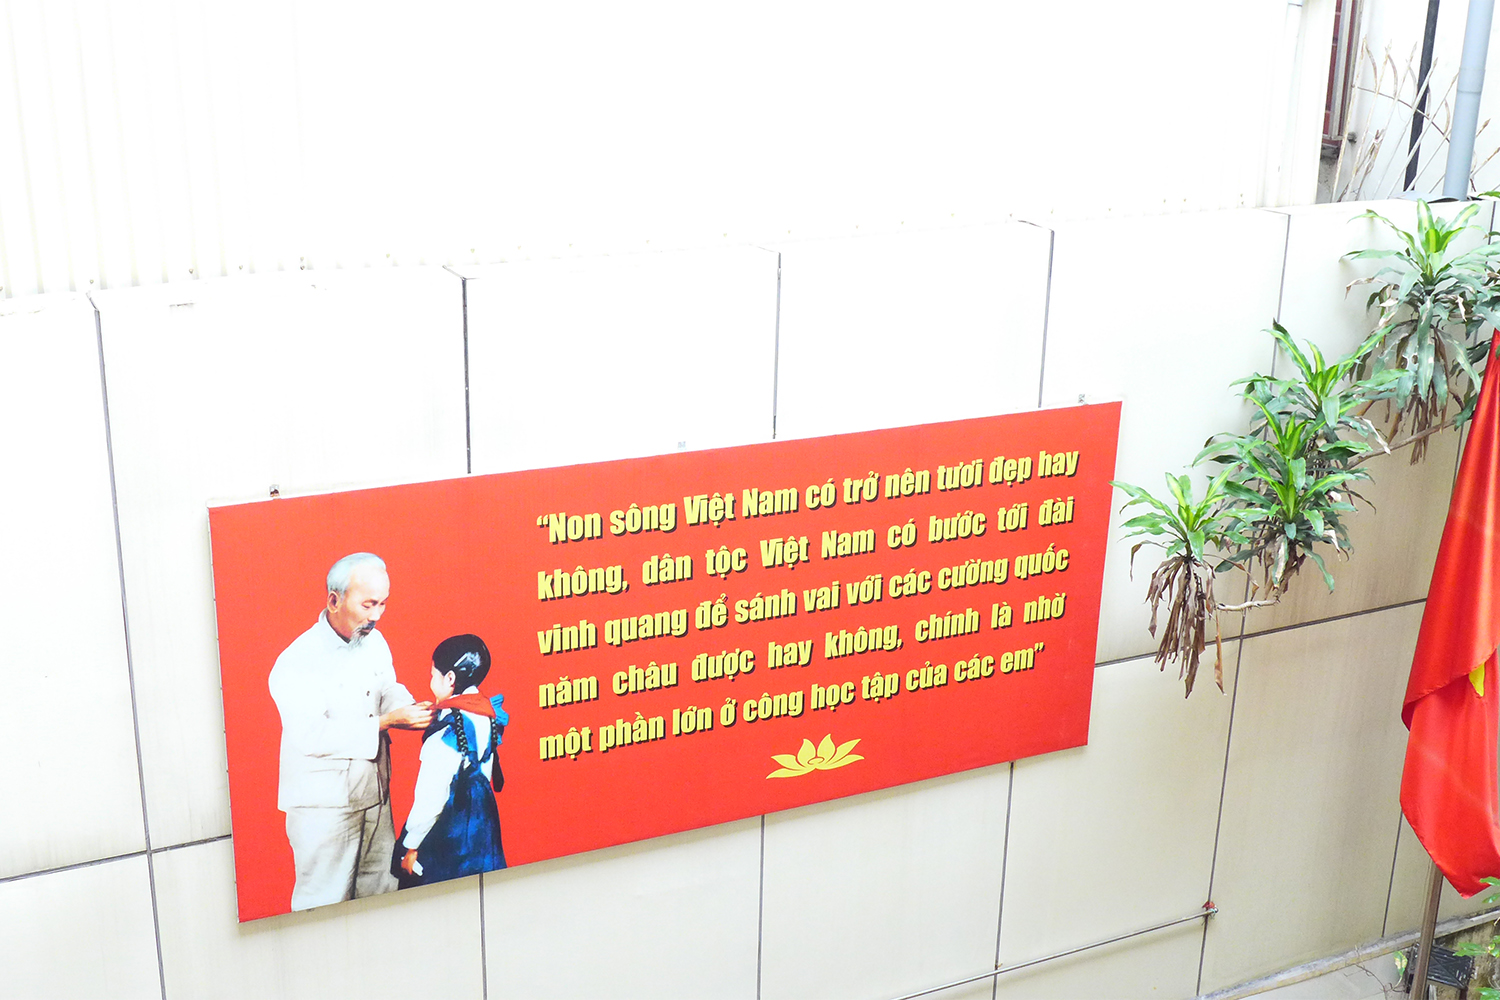 Dans les écoles, il y a toujours un portrait d’Hô Chi Minh, le fondateur du pays, adoré par tous ici.